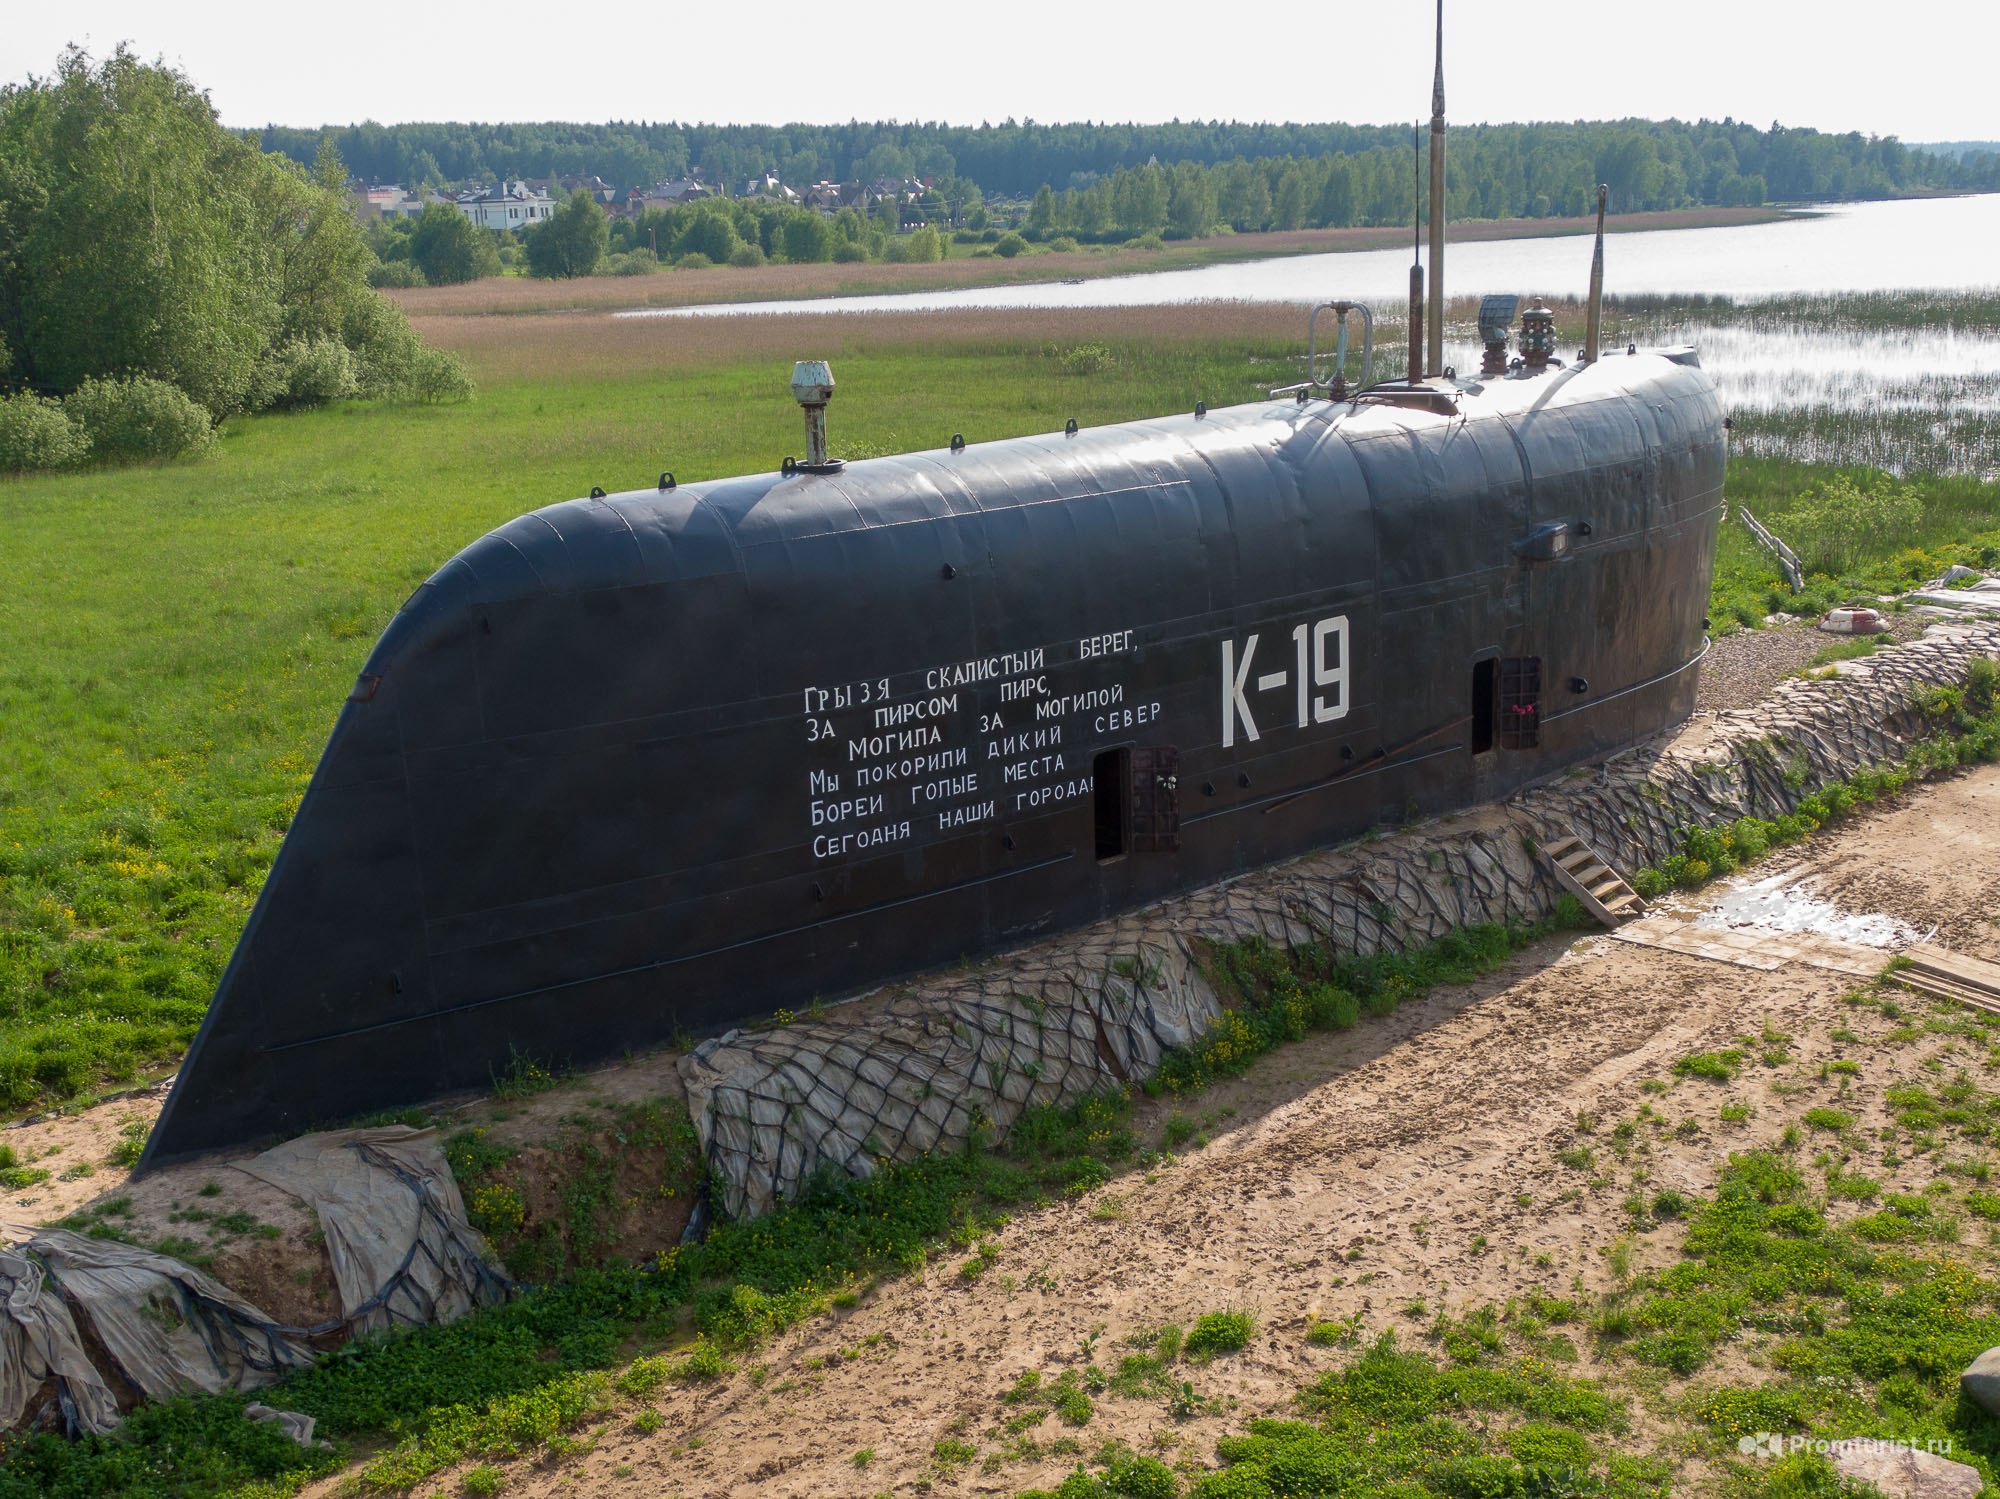 K 19 ru. К-19 атомная подводная лодка. К19 атомная подводная лодка памятник. K19 подводная лодка. Подводная лодка к-19 рубка.